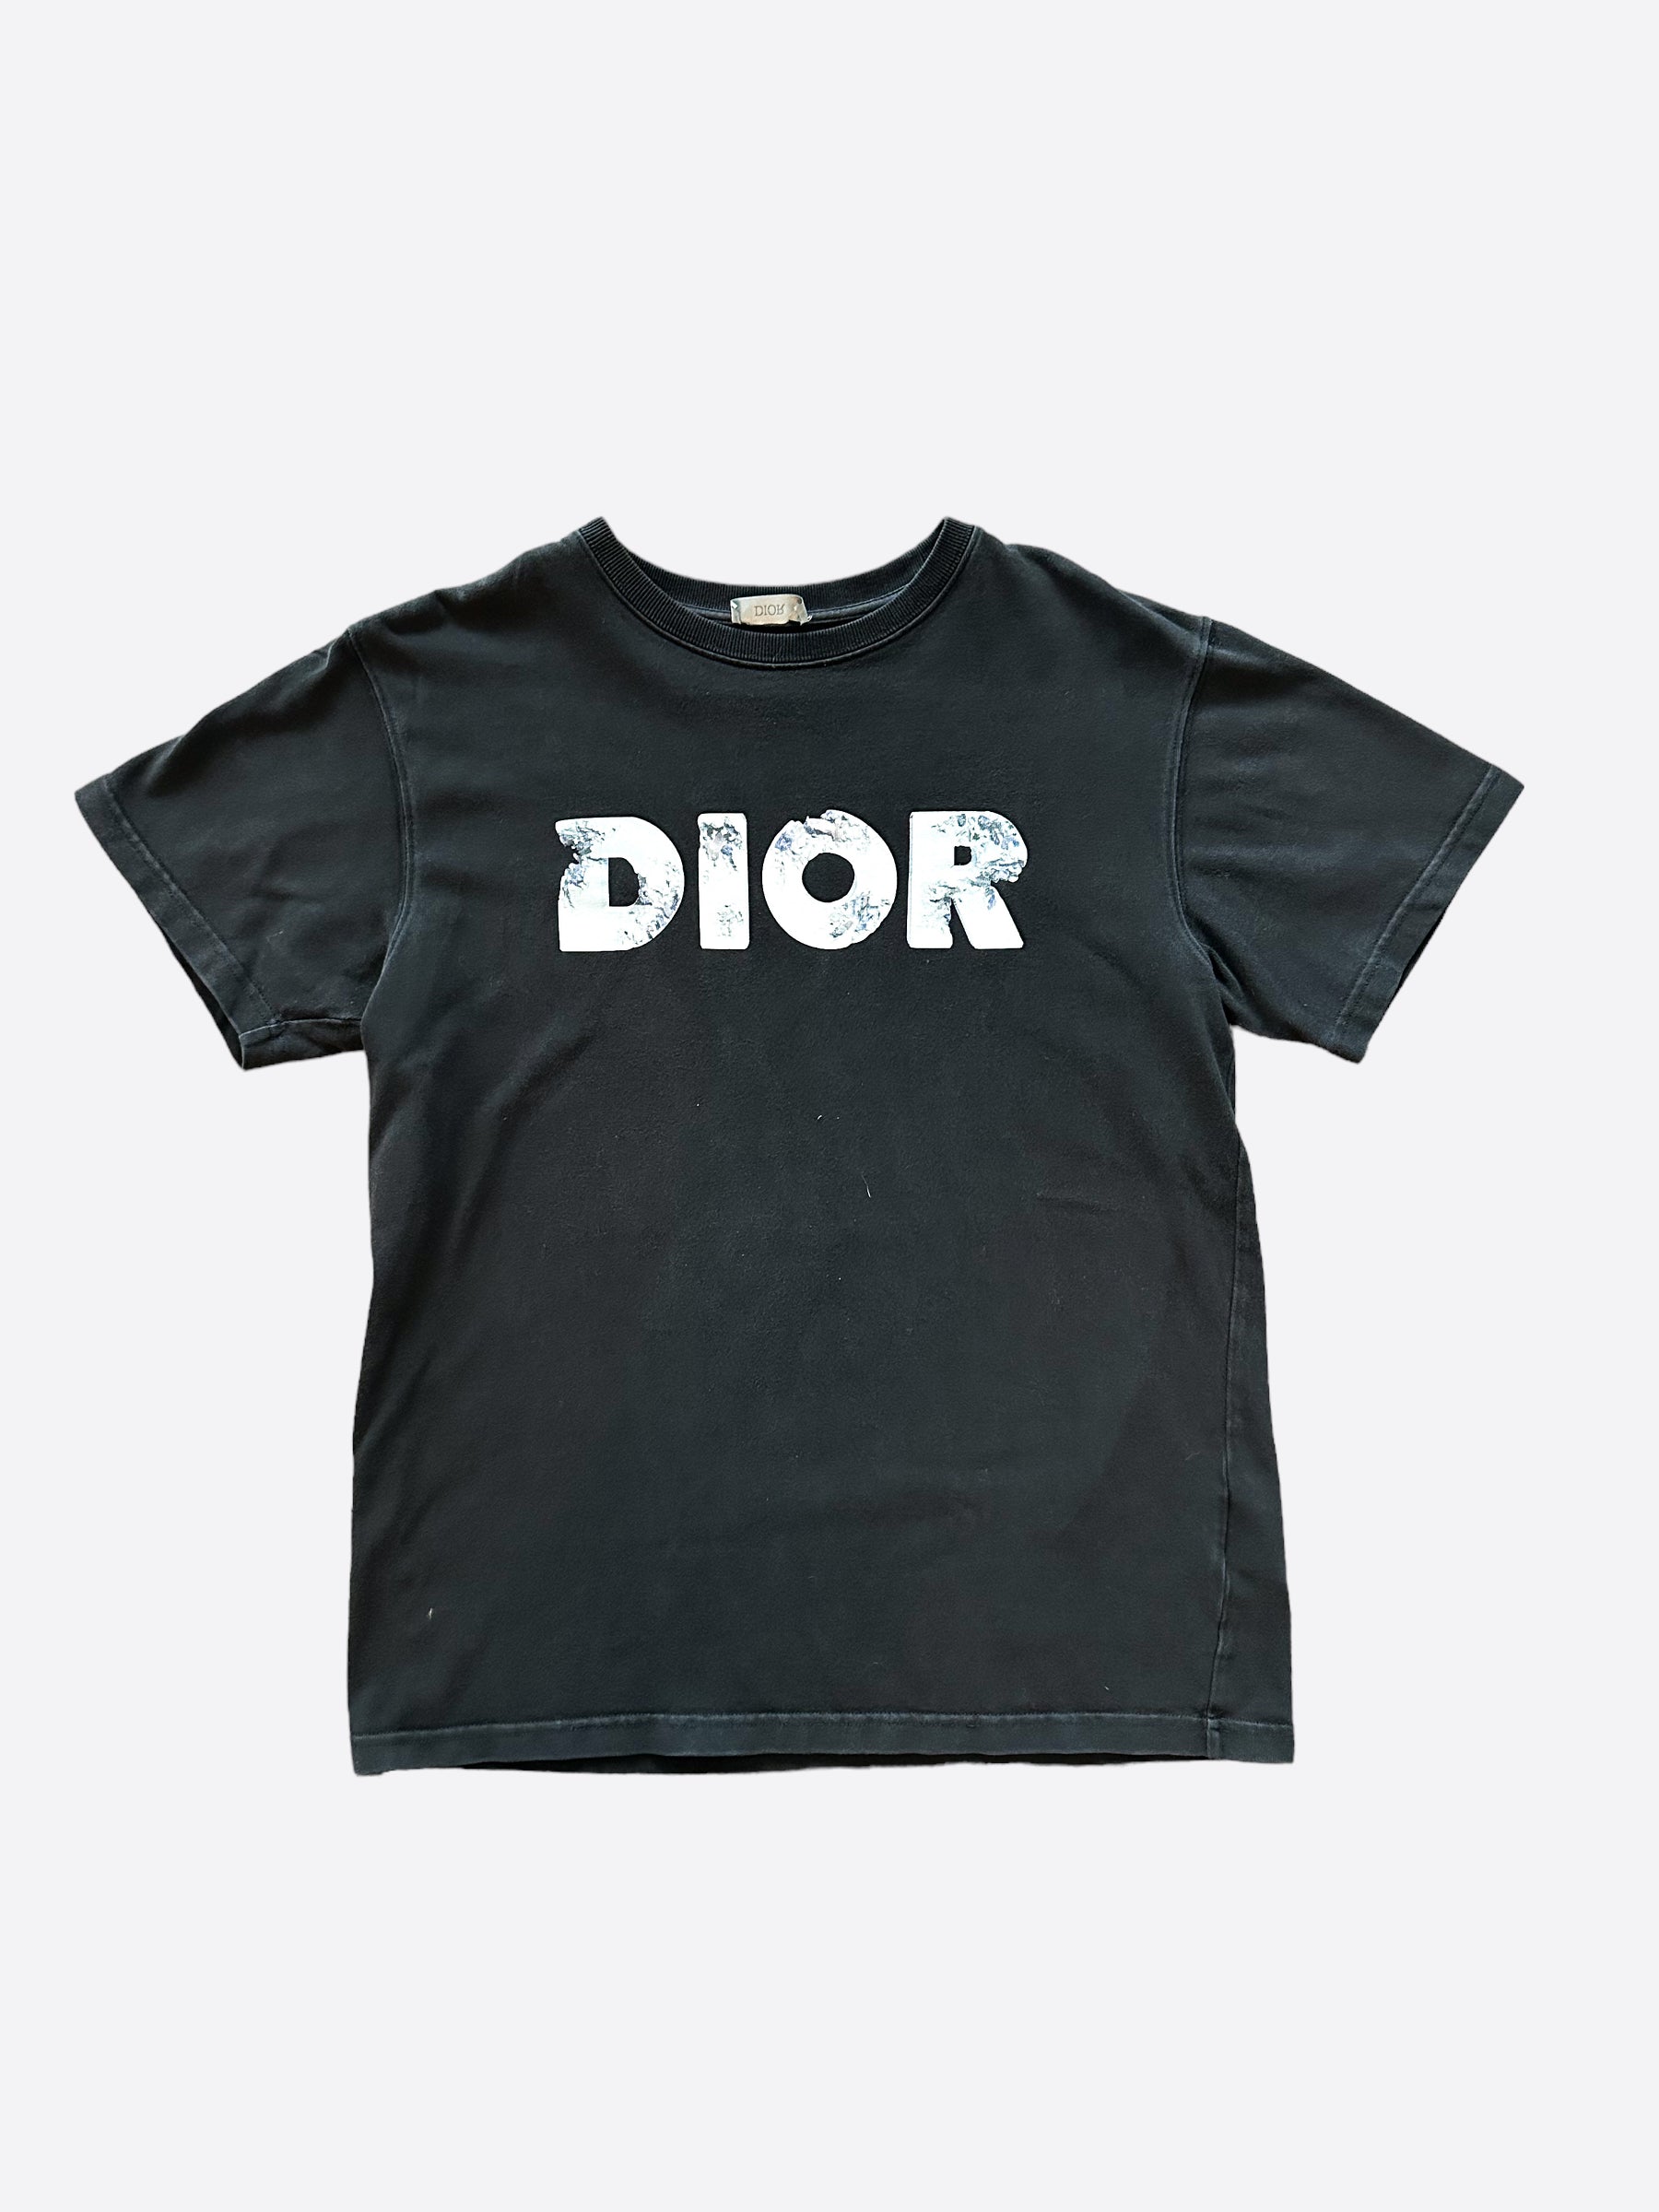 Dior X Daniel Arsham Button Up Shirt for Sale in Phoenix AZ  OfferUp